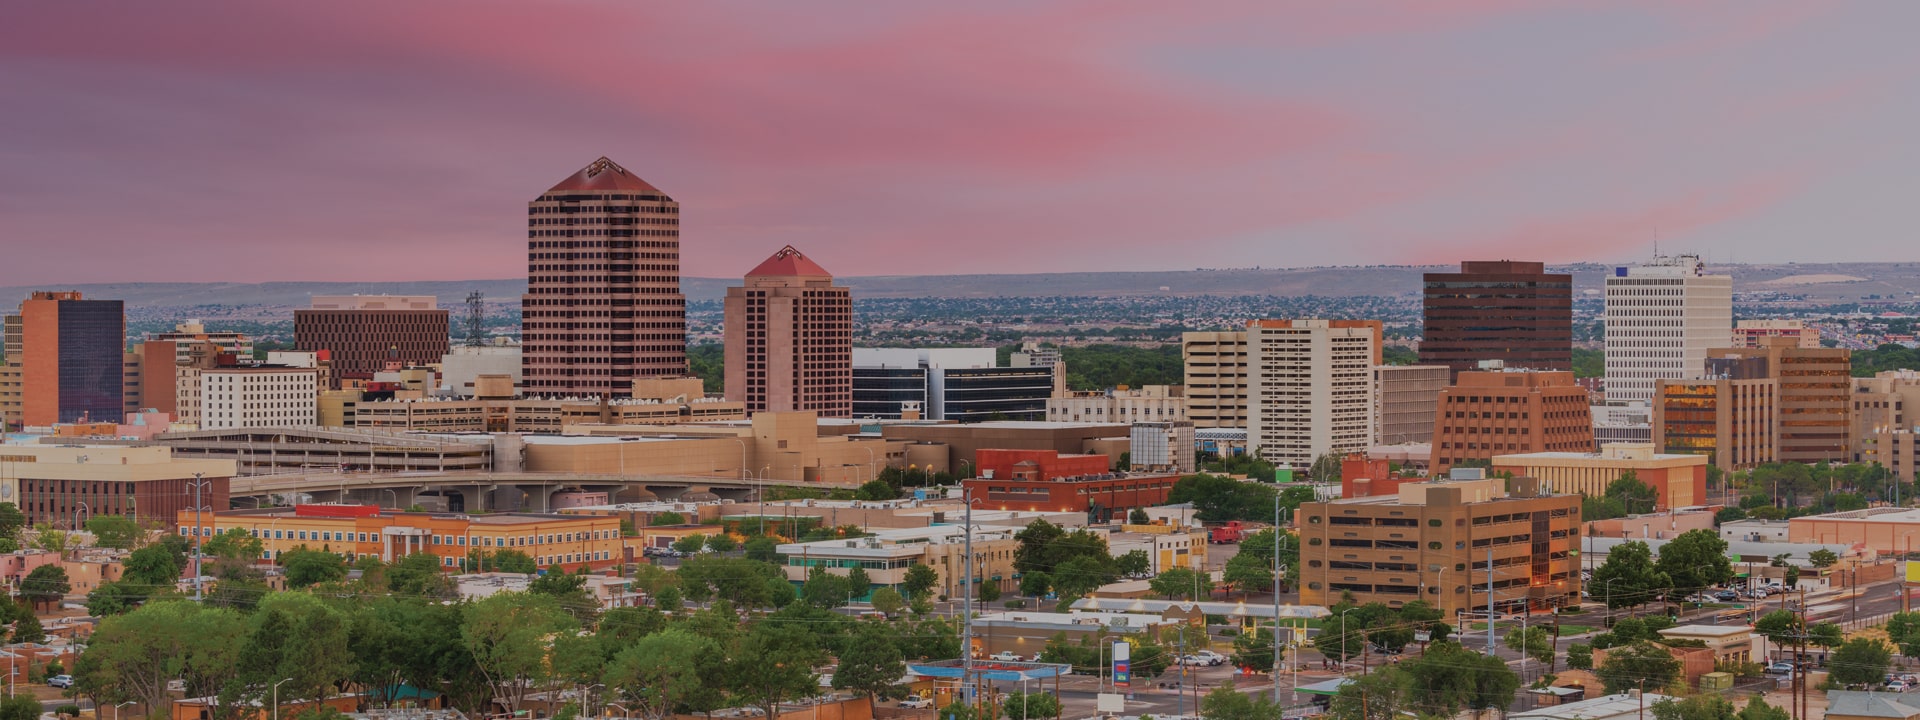 New Mexico panoramic skyline